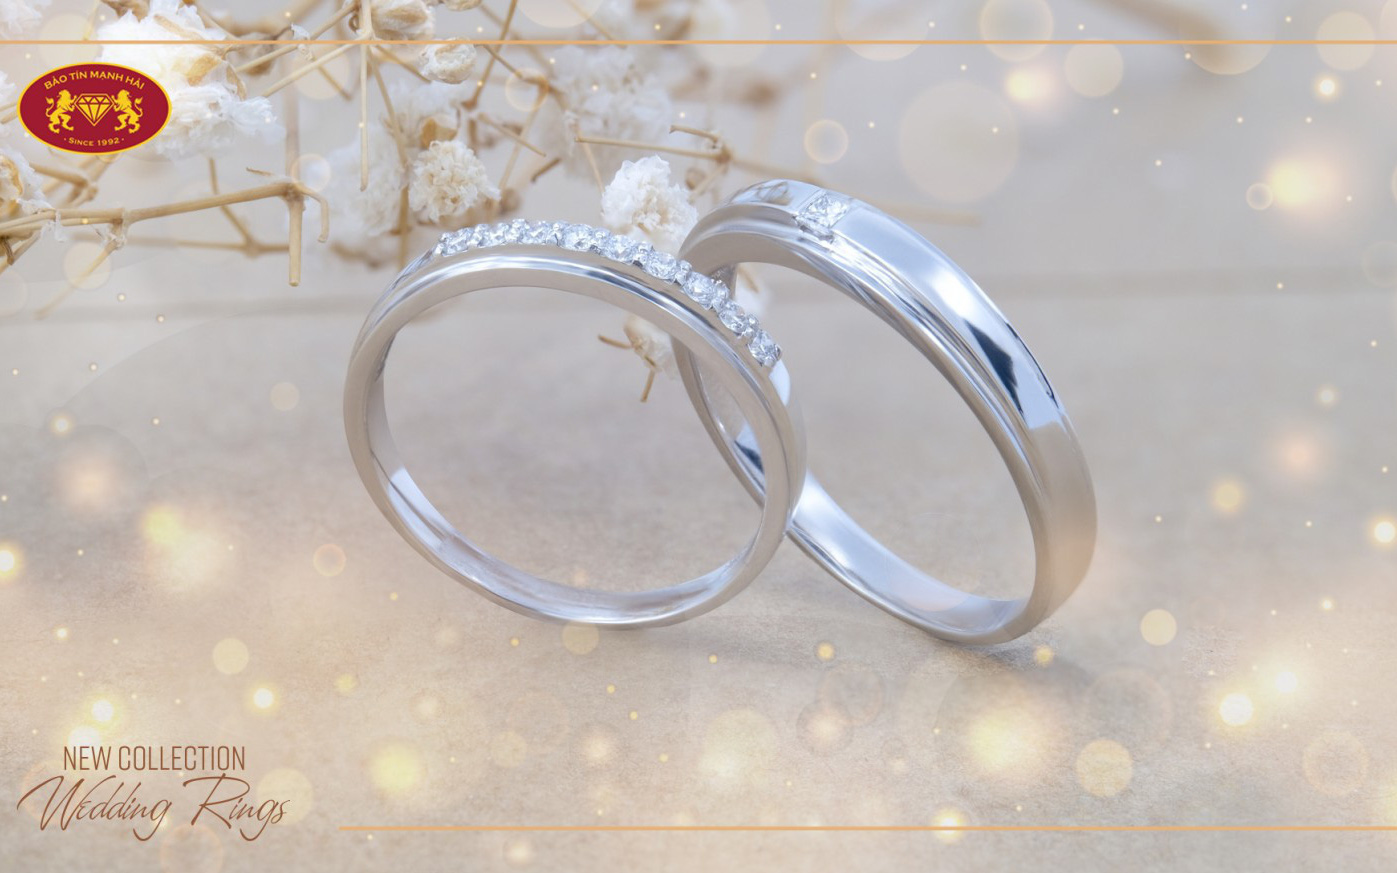 Gợi ý những mẫu nhẫn cưới đẹp dành cho các cặp đôi